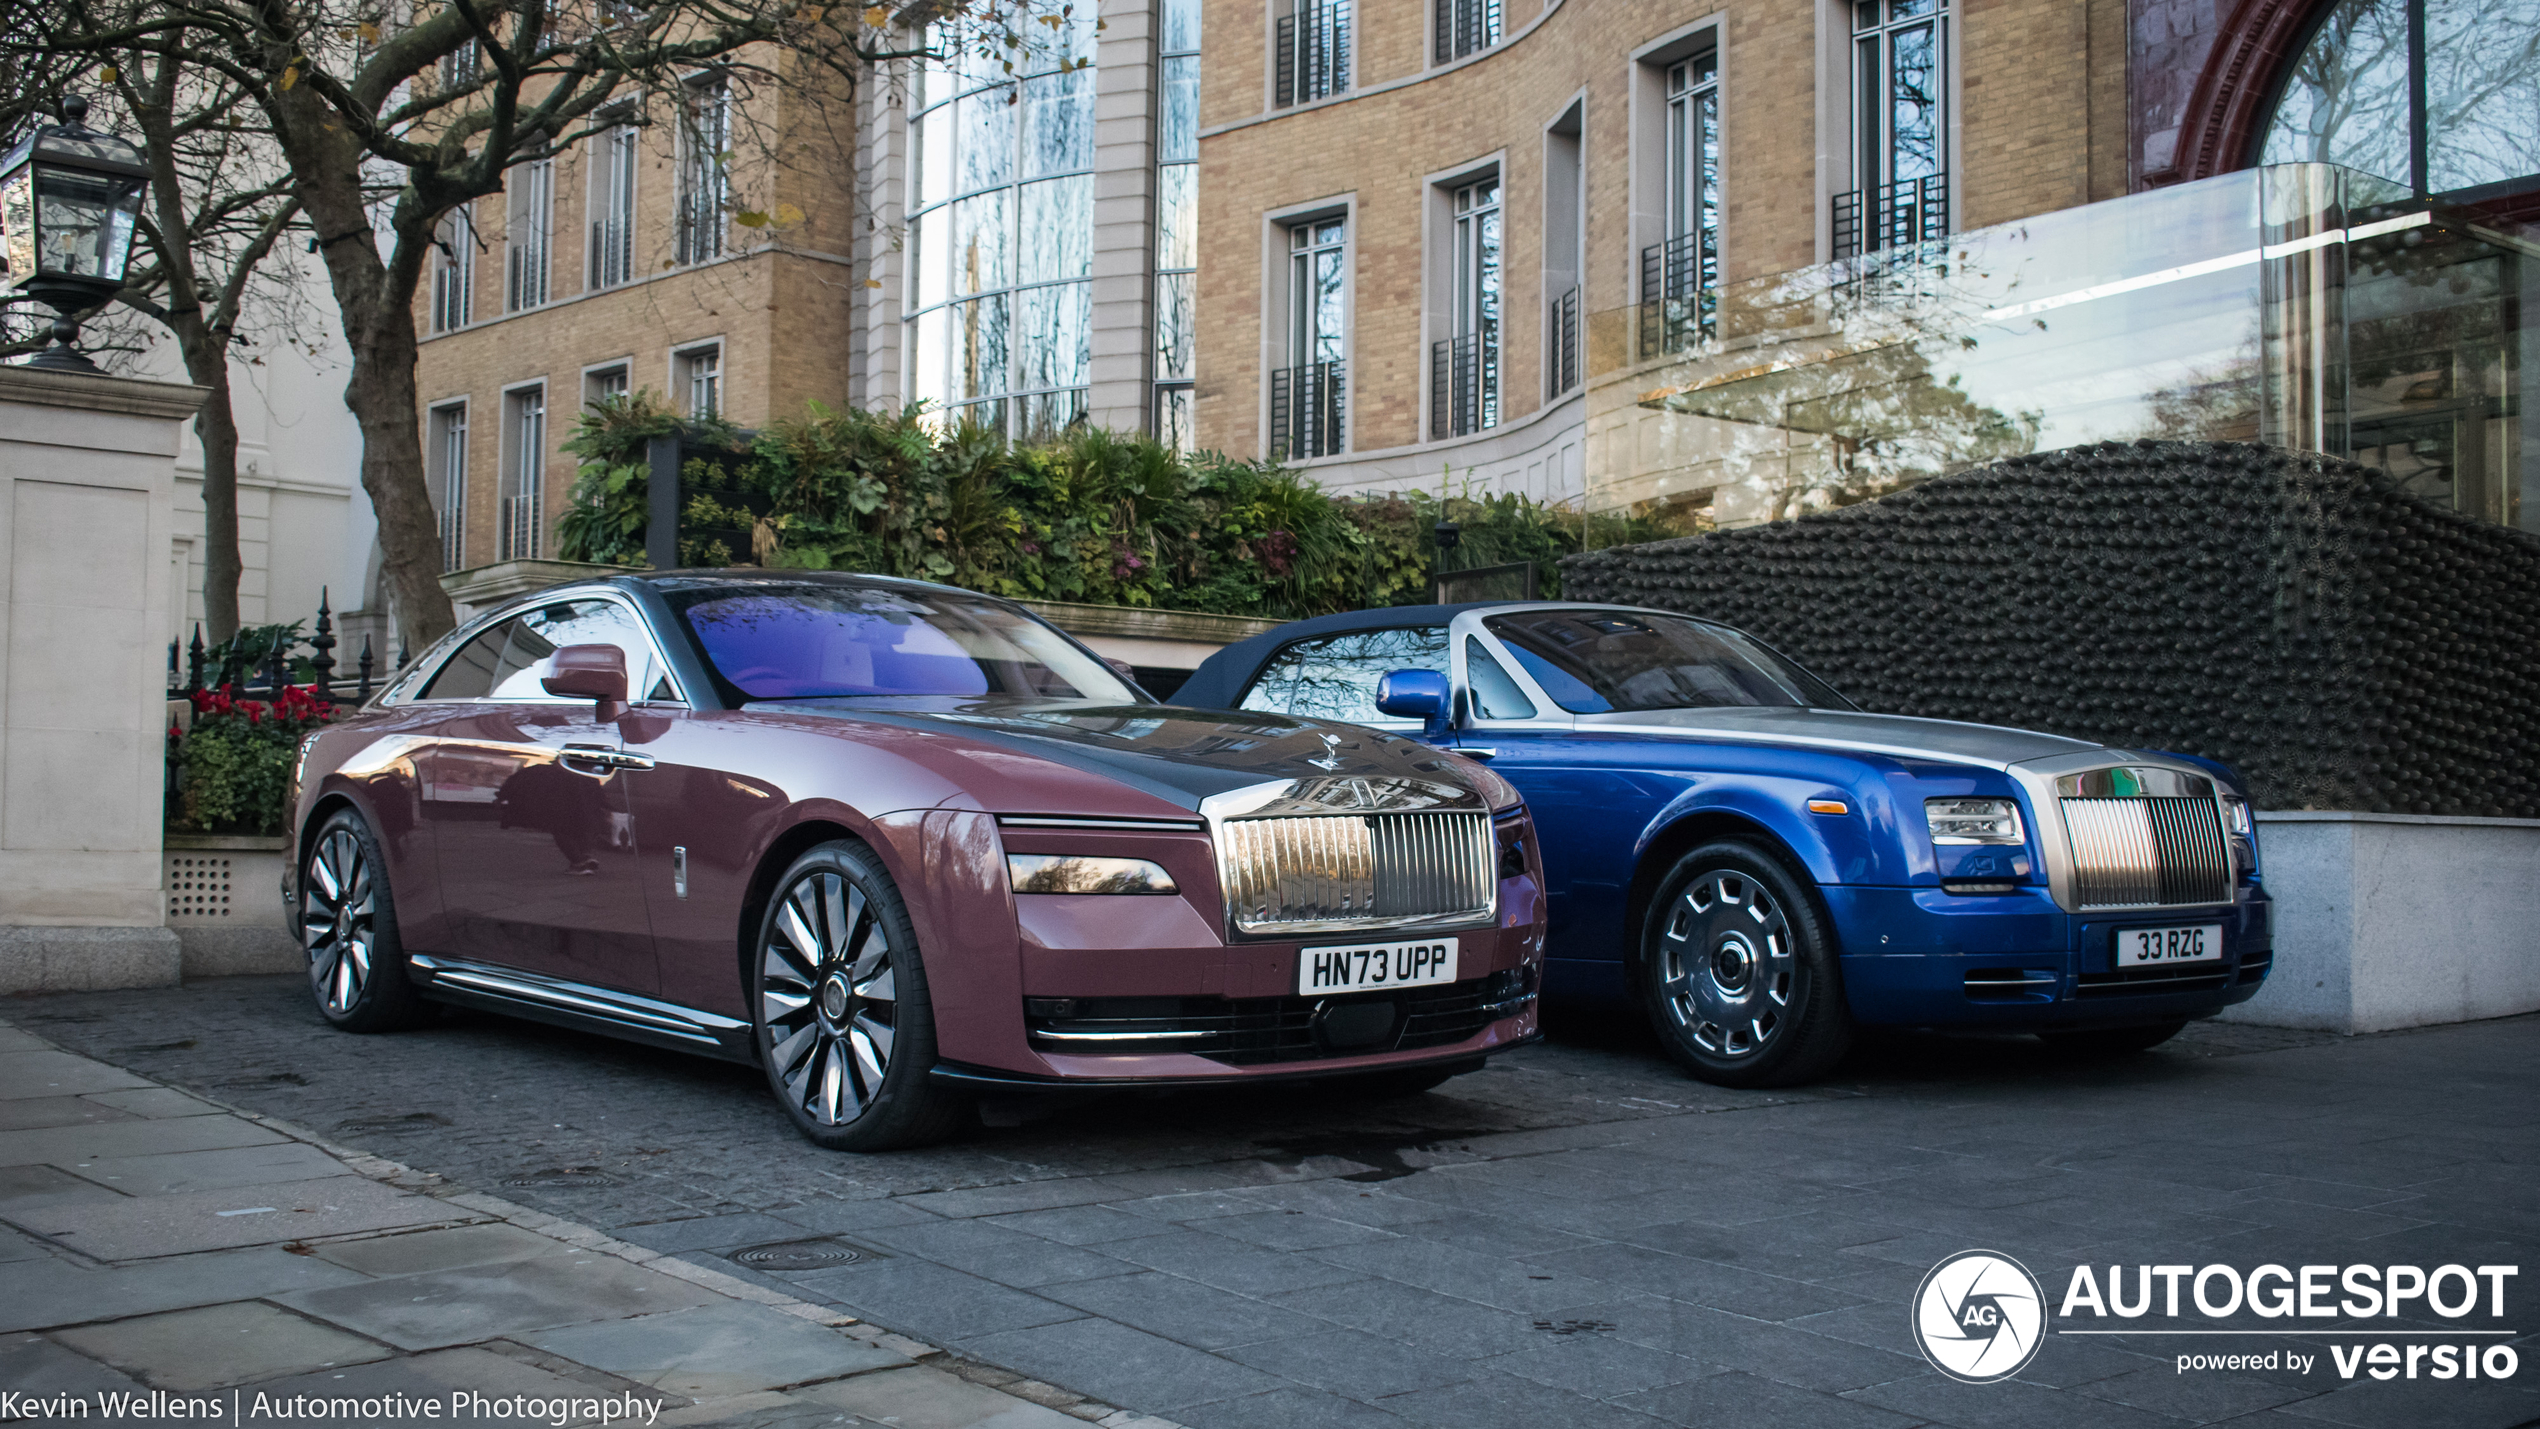 Splinternieuwe Rolls-Royce Spectre heeft nu ook Londen bereikt